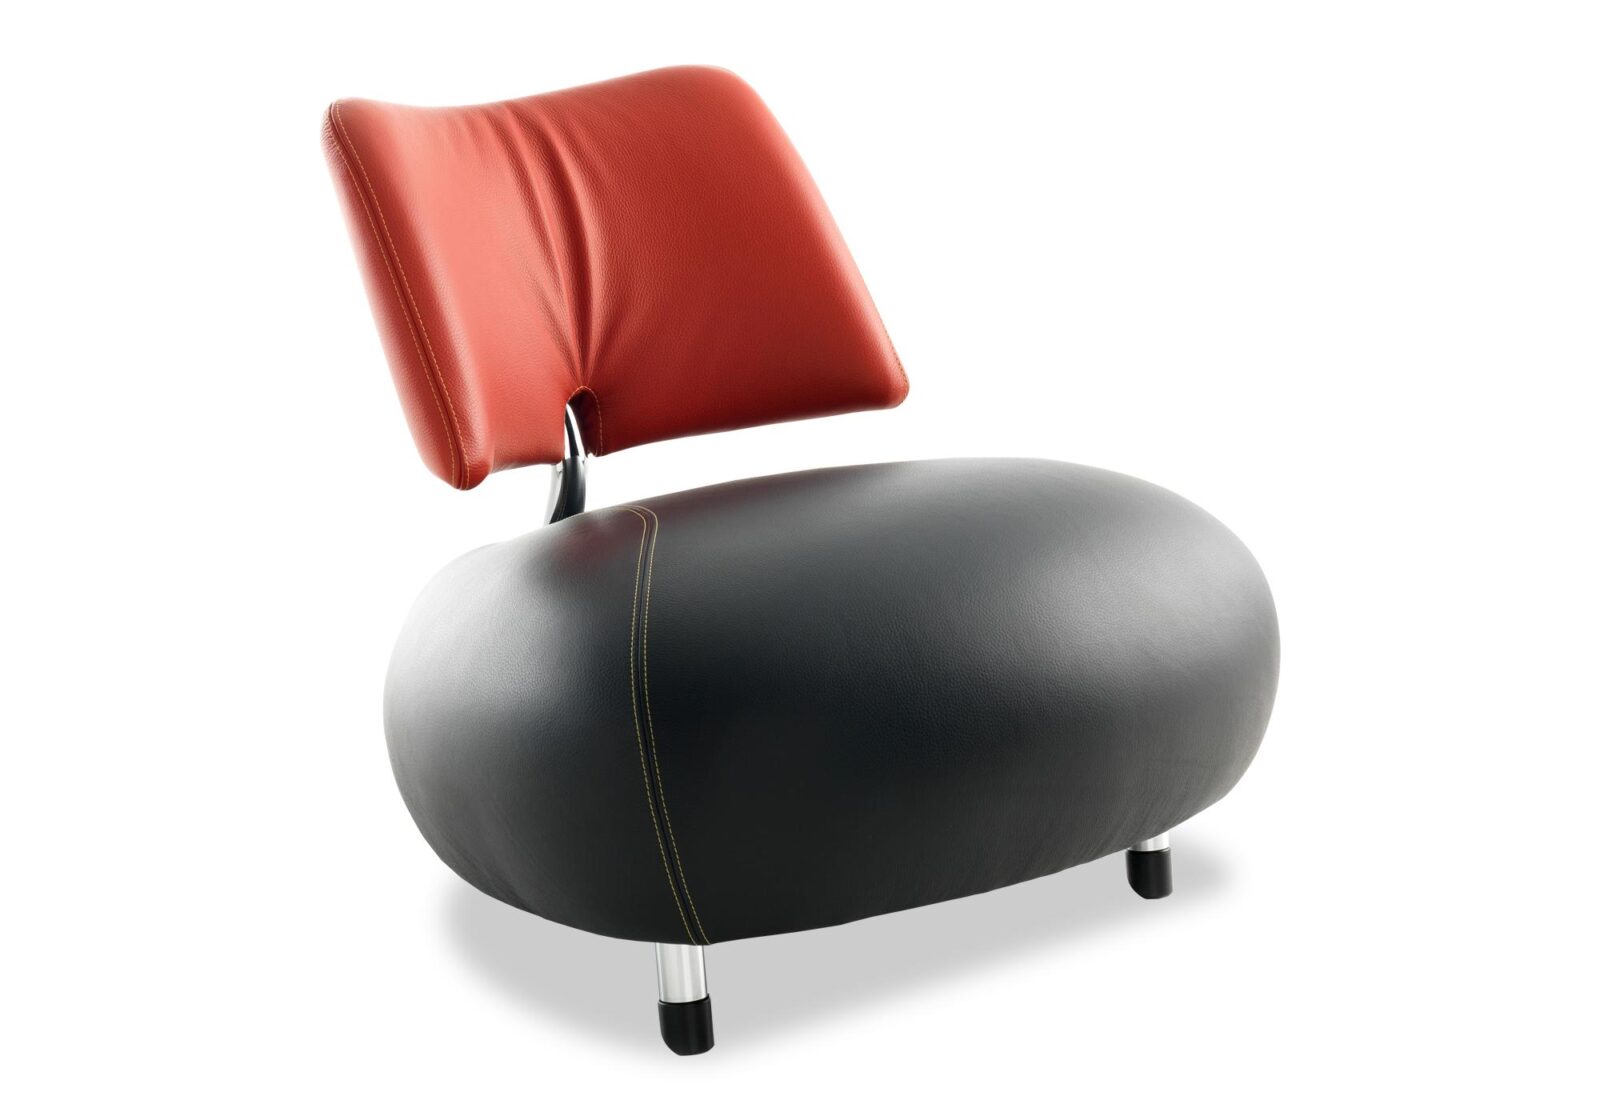 Sessel Pallone mit Rückenlehne. Bezug: Leder. Farbe: Schwarz- Rot. Erhältlich bei Möbel Gallati.